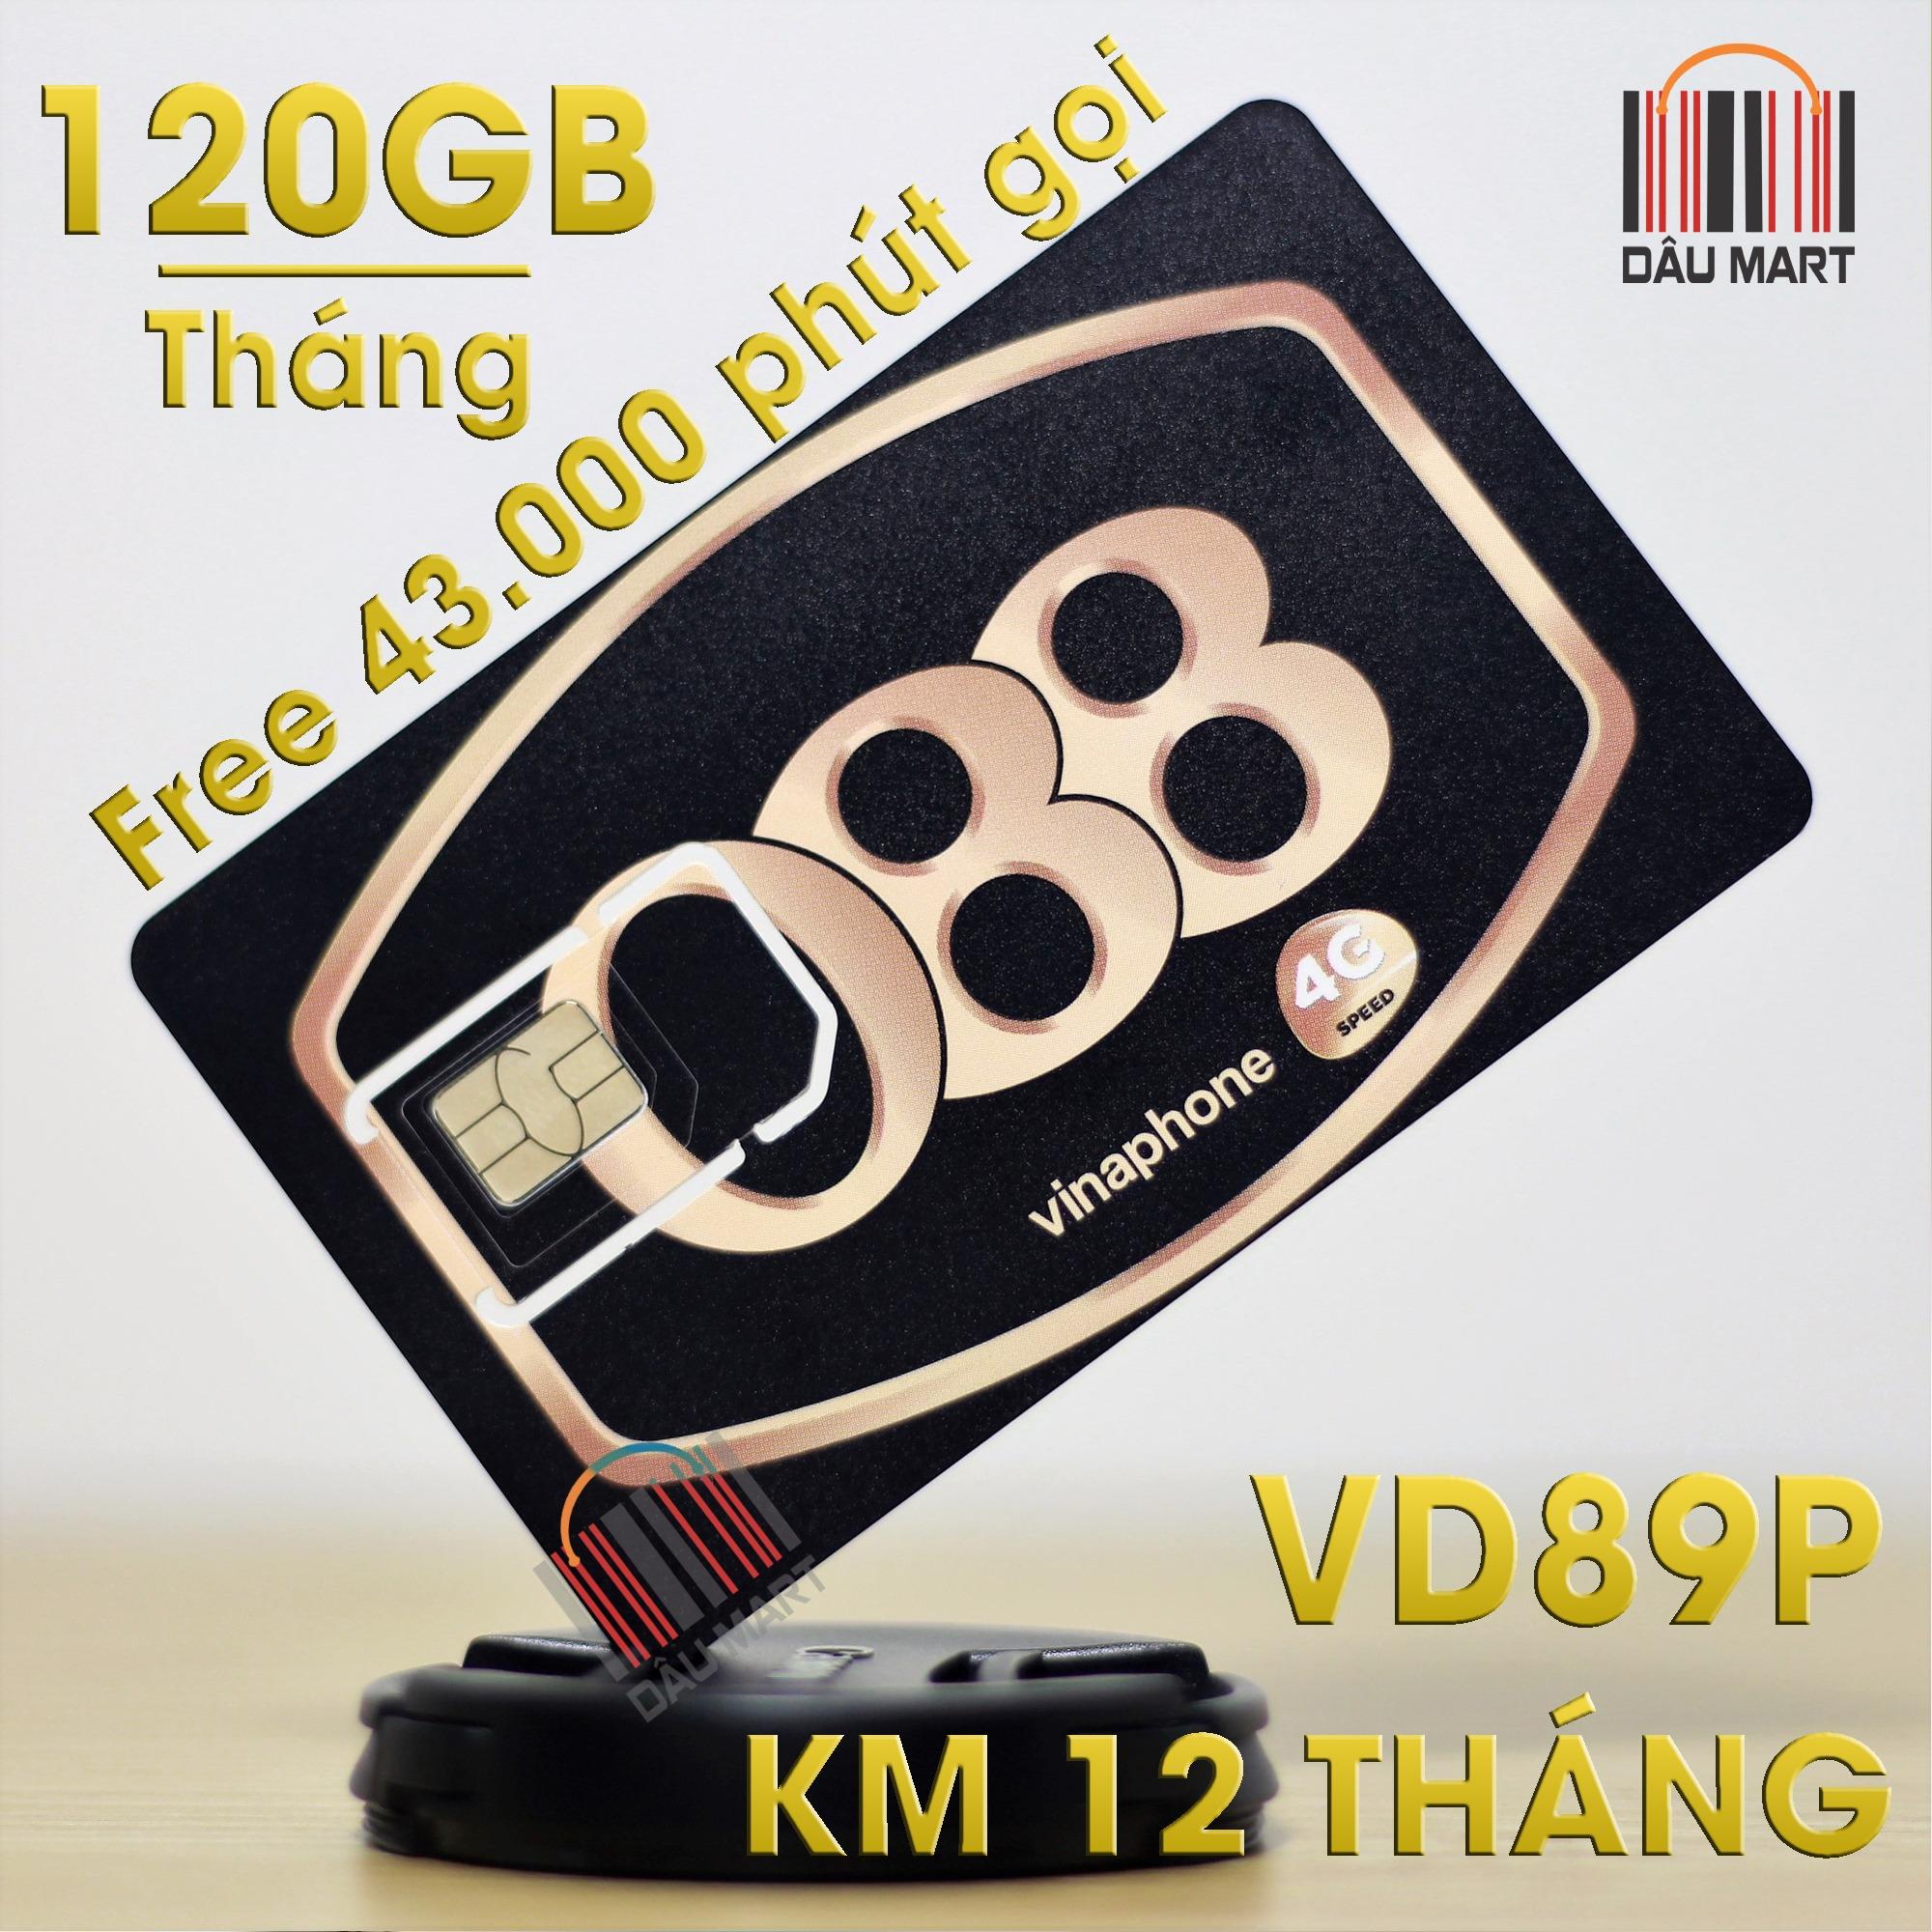 SIM 4G VD89P Vinaphone 120GB/Tháng + Tặng 43.000 Phút gọi/tháng